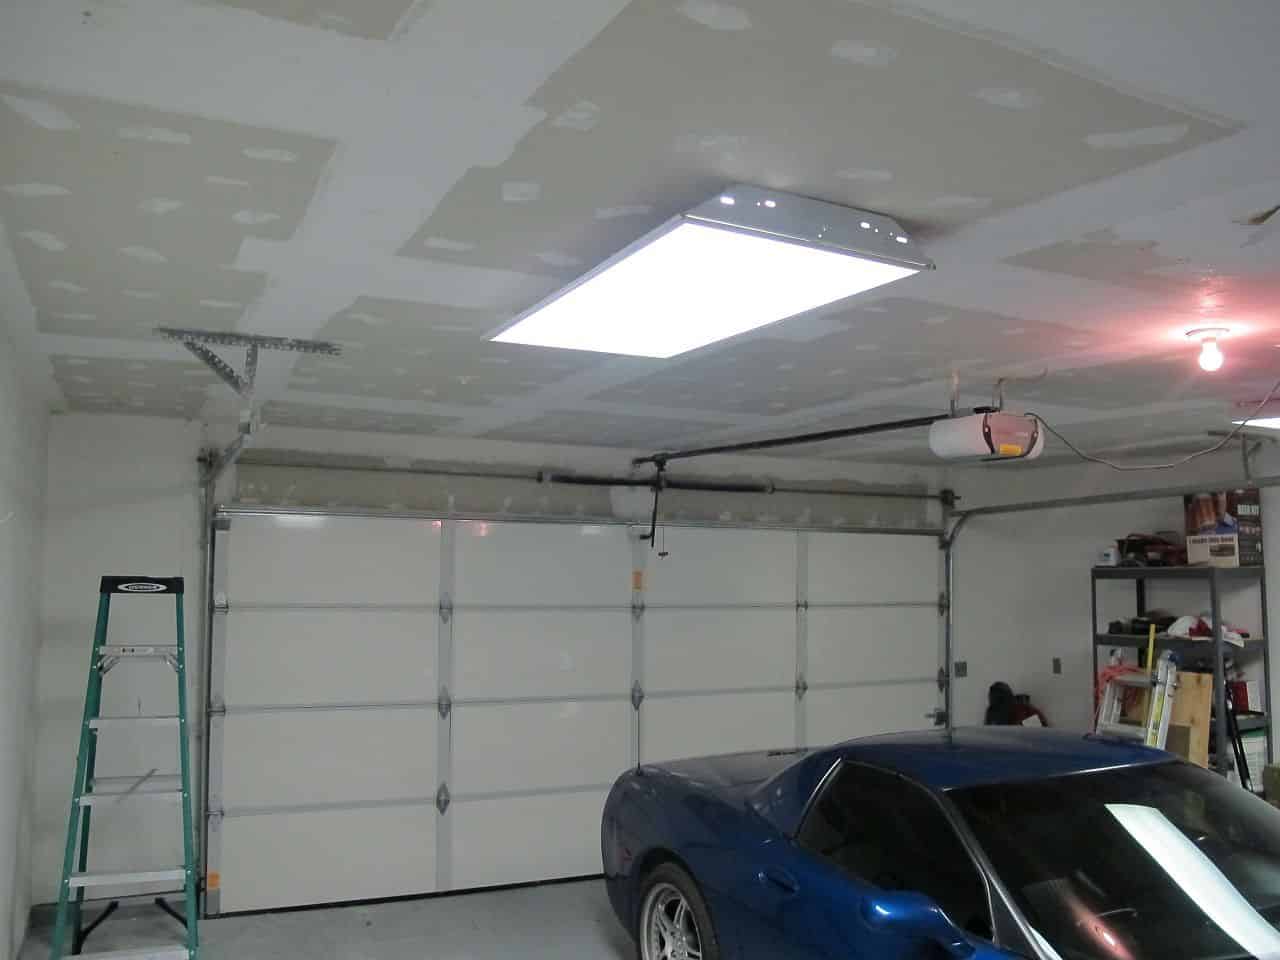 Чем обшить потолок в гараже: отделка, чем подшить по балкам, зашить и сделать лучше, можно ли натяжной в мороз, как покрасить недорогой подвесной потолок, фото-материалы